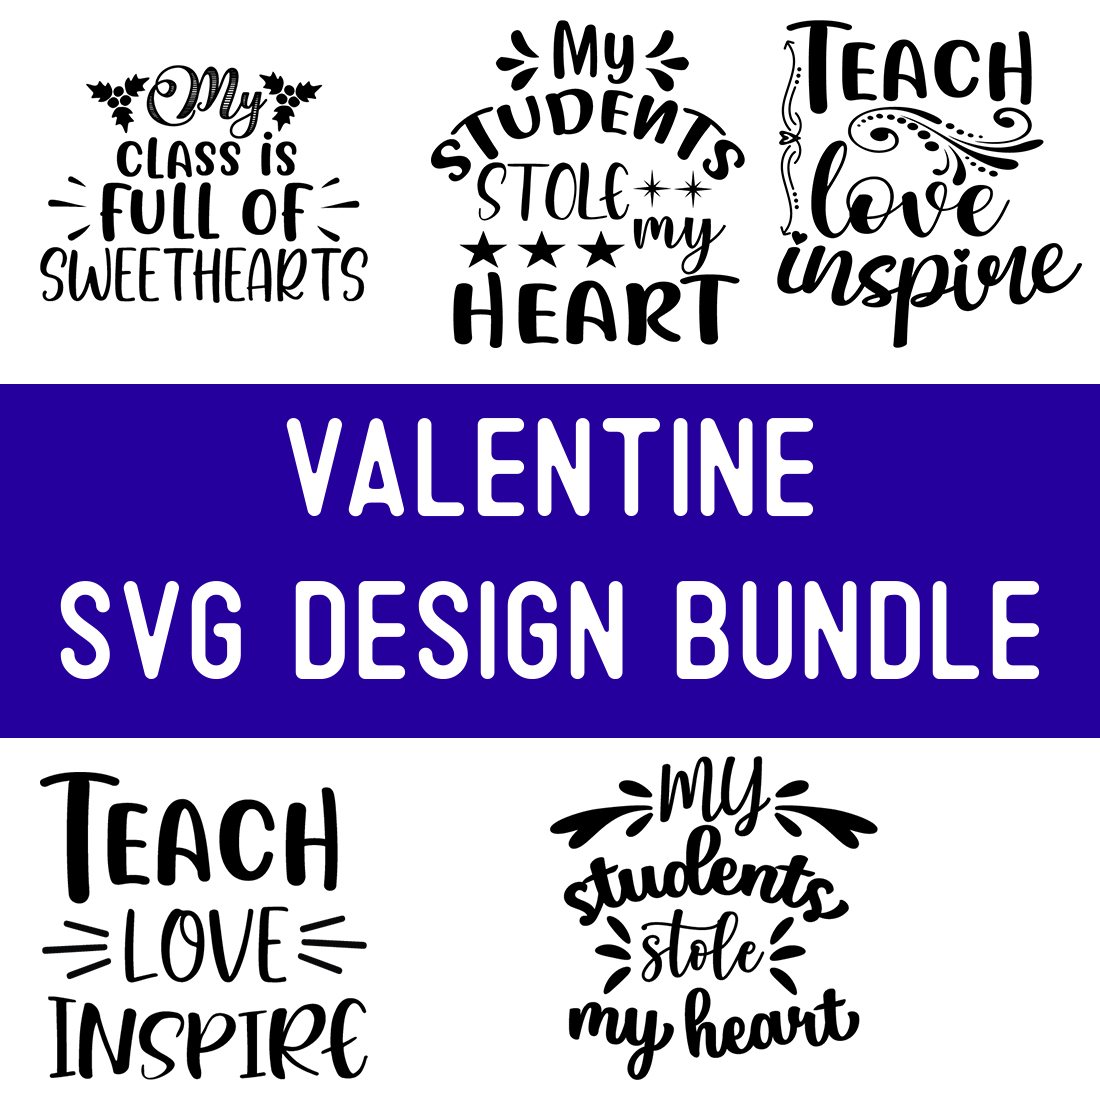 Valentine SVG Design Bundle preview image.